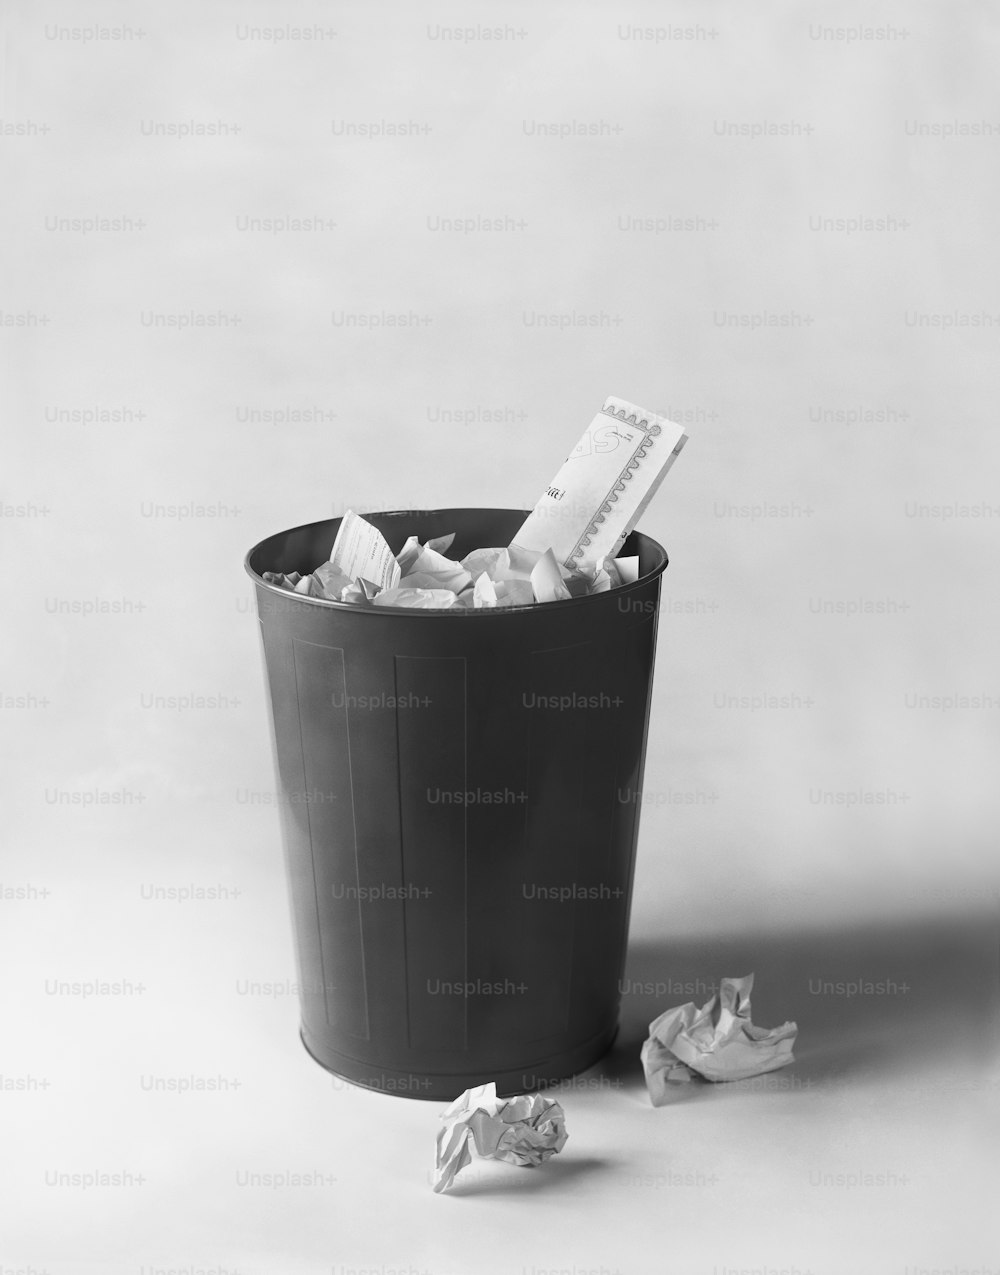 Une photo en noir et blanc d’une poubelle